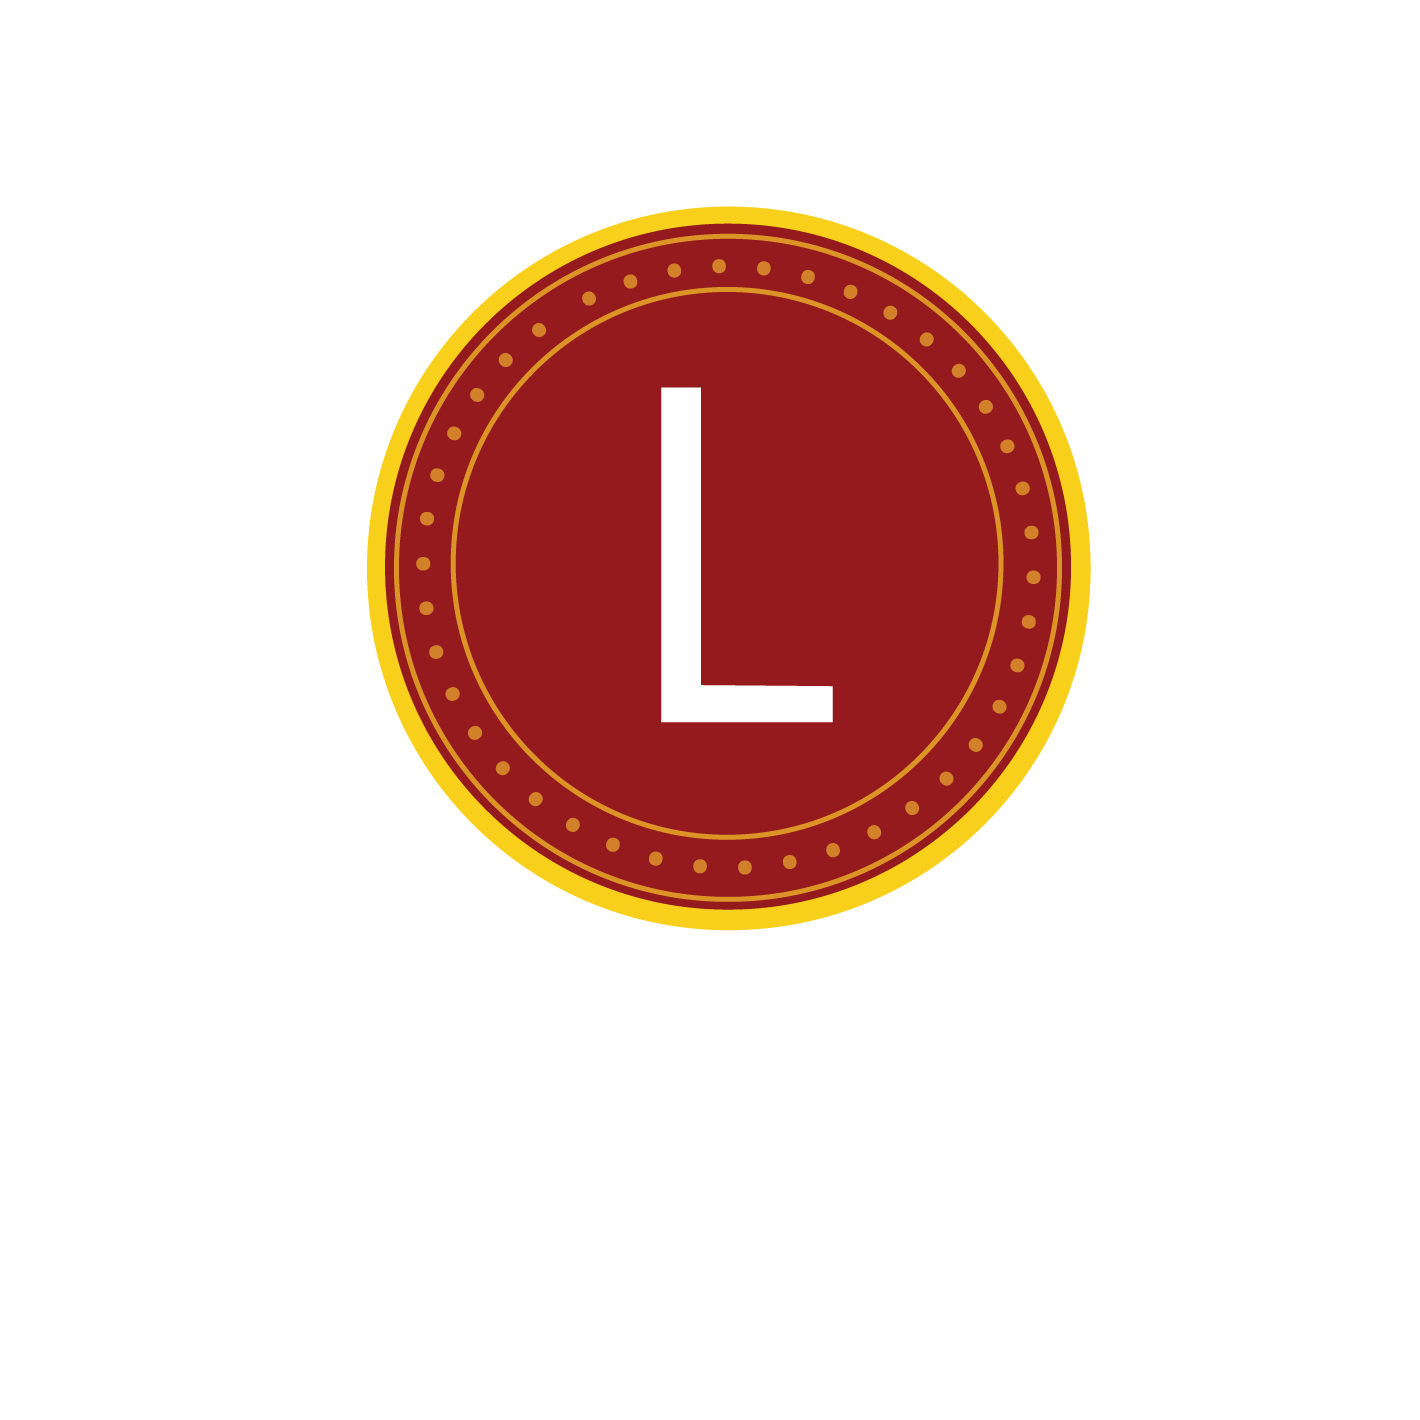 Laatusa Oy